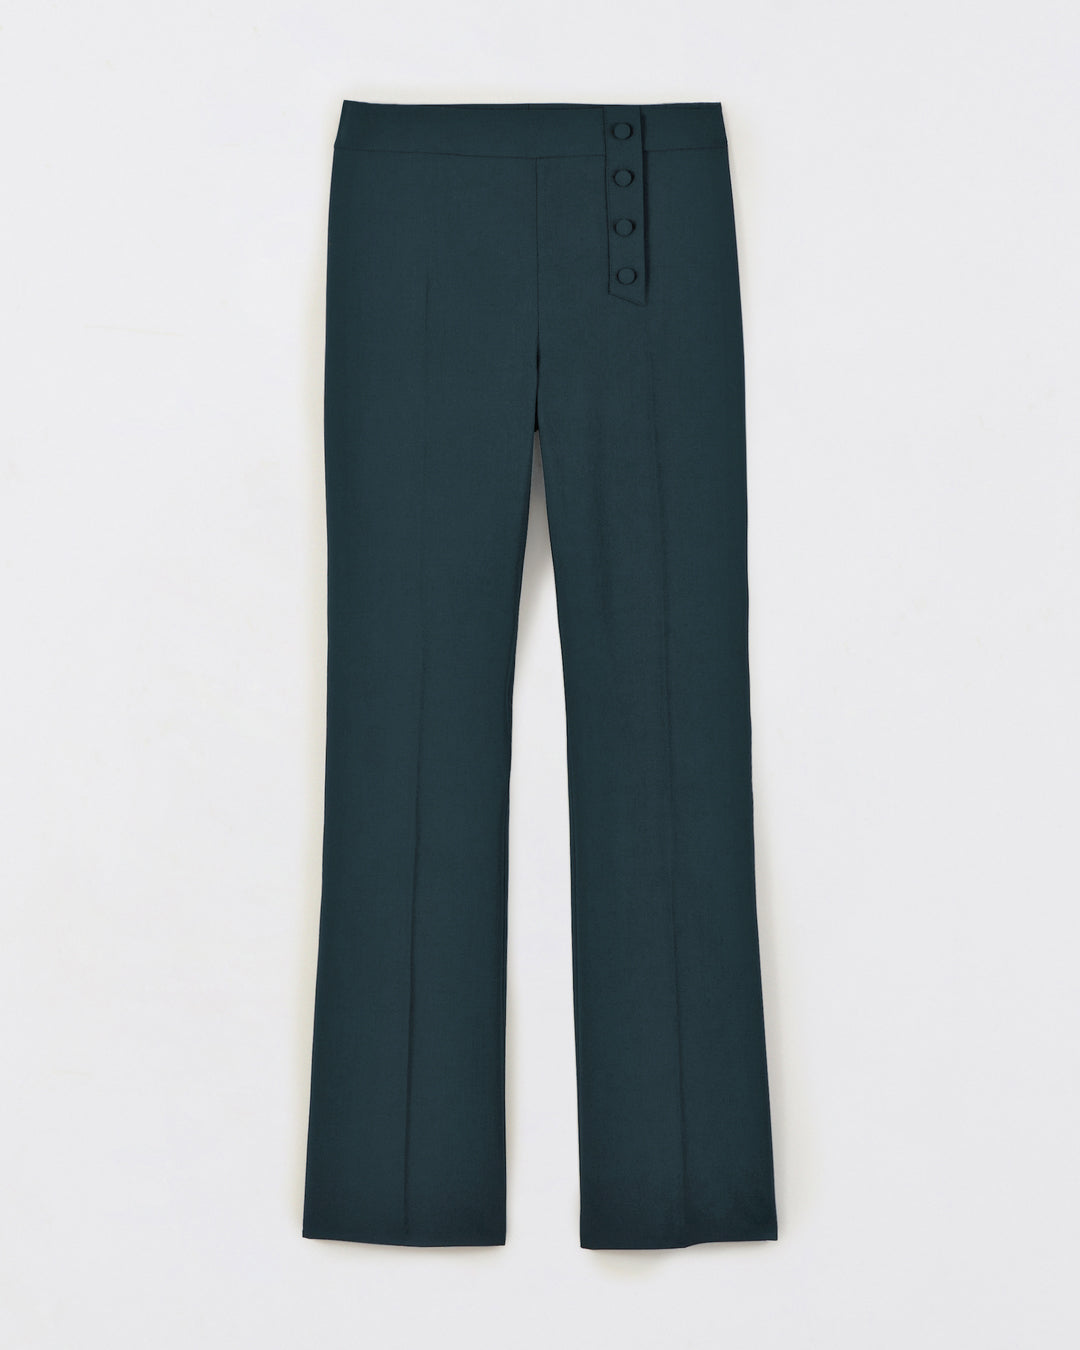 Pantalon-tailleur-vert-Taille-haute-Coupe-flair-évasée-aux-chevilles-Décoration-boutons-recouverts-asymétrique-Fermeture-zip-côté-17H10-tailleurs-pour-femme-paris-